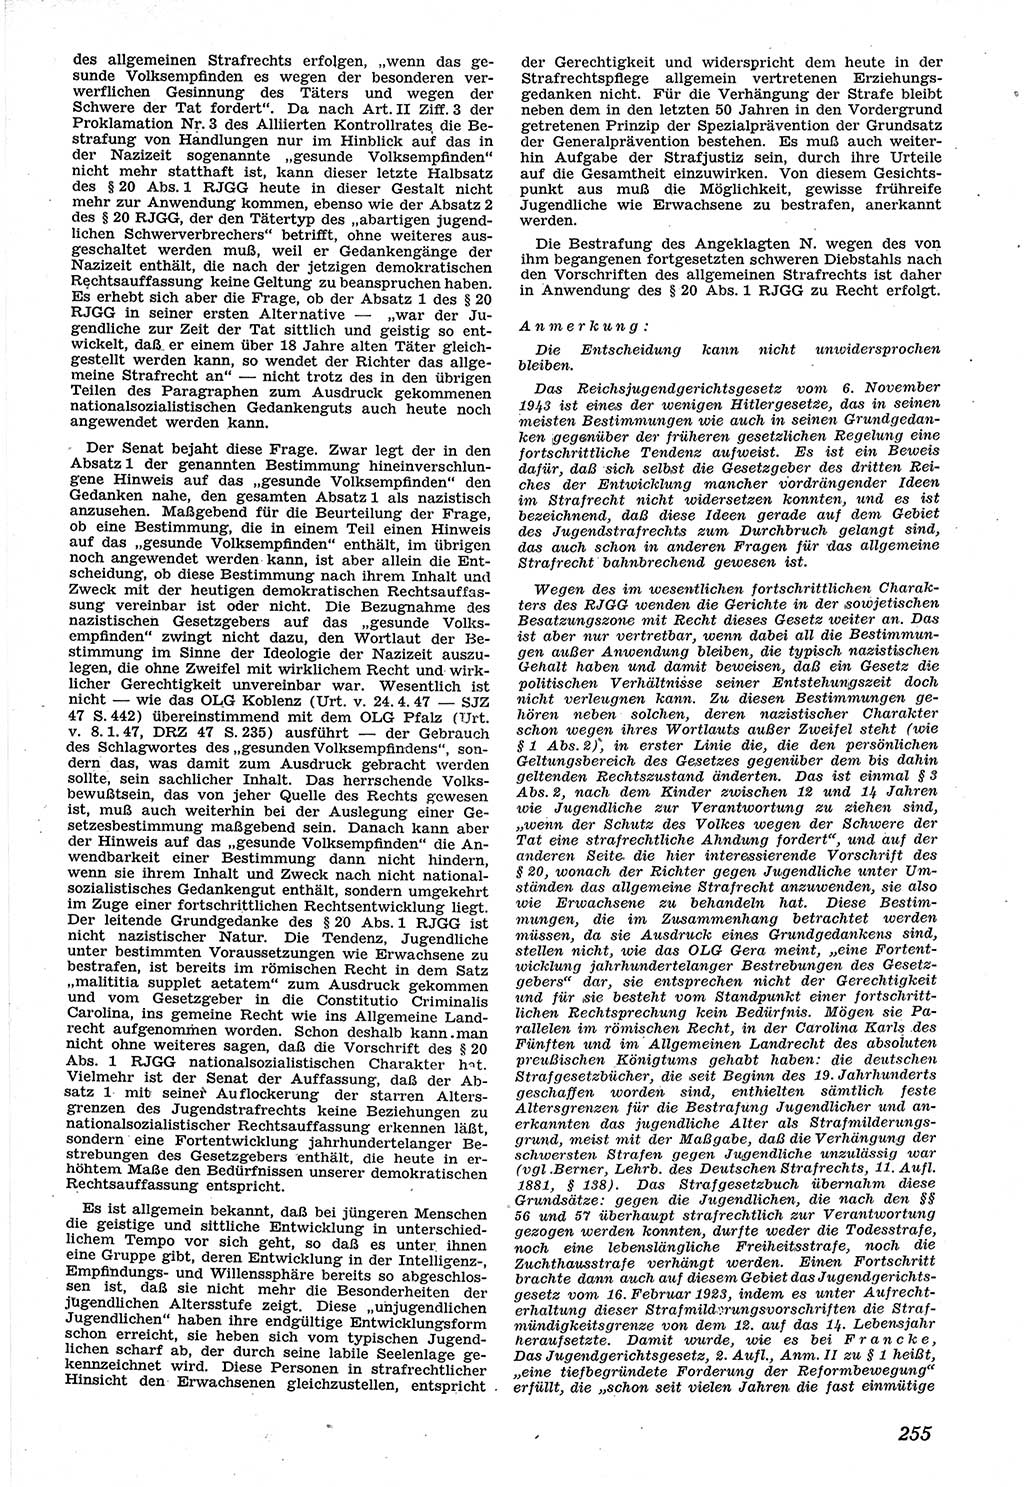 Neue Justiz (NJ), Zeitschrift für Recht und Rechtswissenschaft [Sowjetische Besatzungszone (SBZ) Deutschland], 1. Jahrgang 1947, Seite 255 (NJ SBZ Dtl. 1947, S. 255)